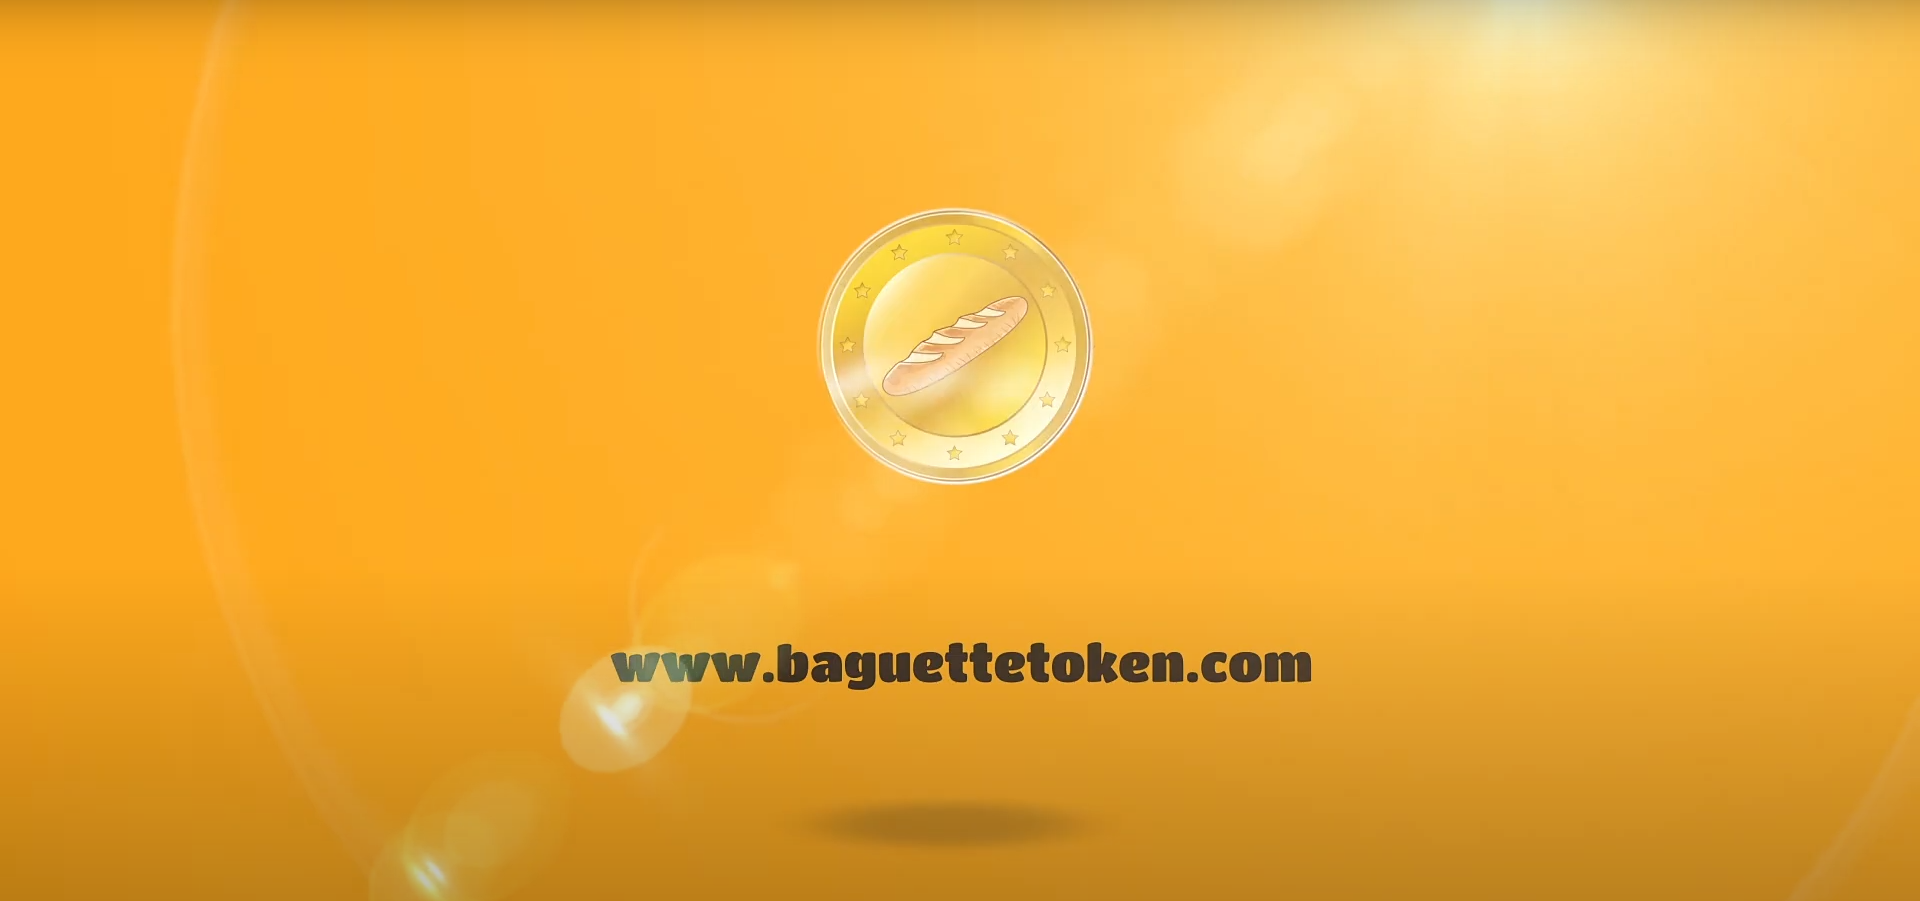 baguette token crypto - 7 fantastiche criptovalute di meme oltre a Dogecoin